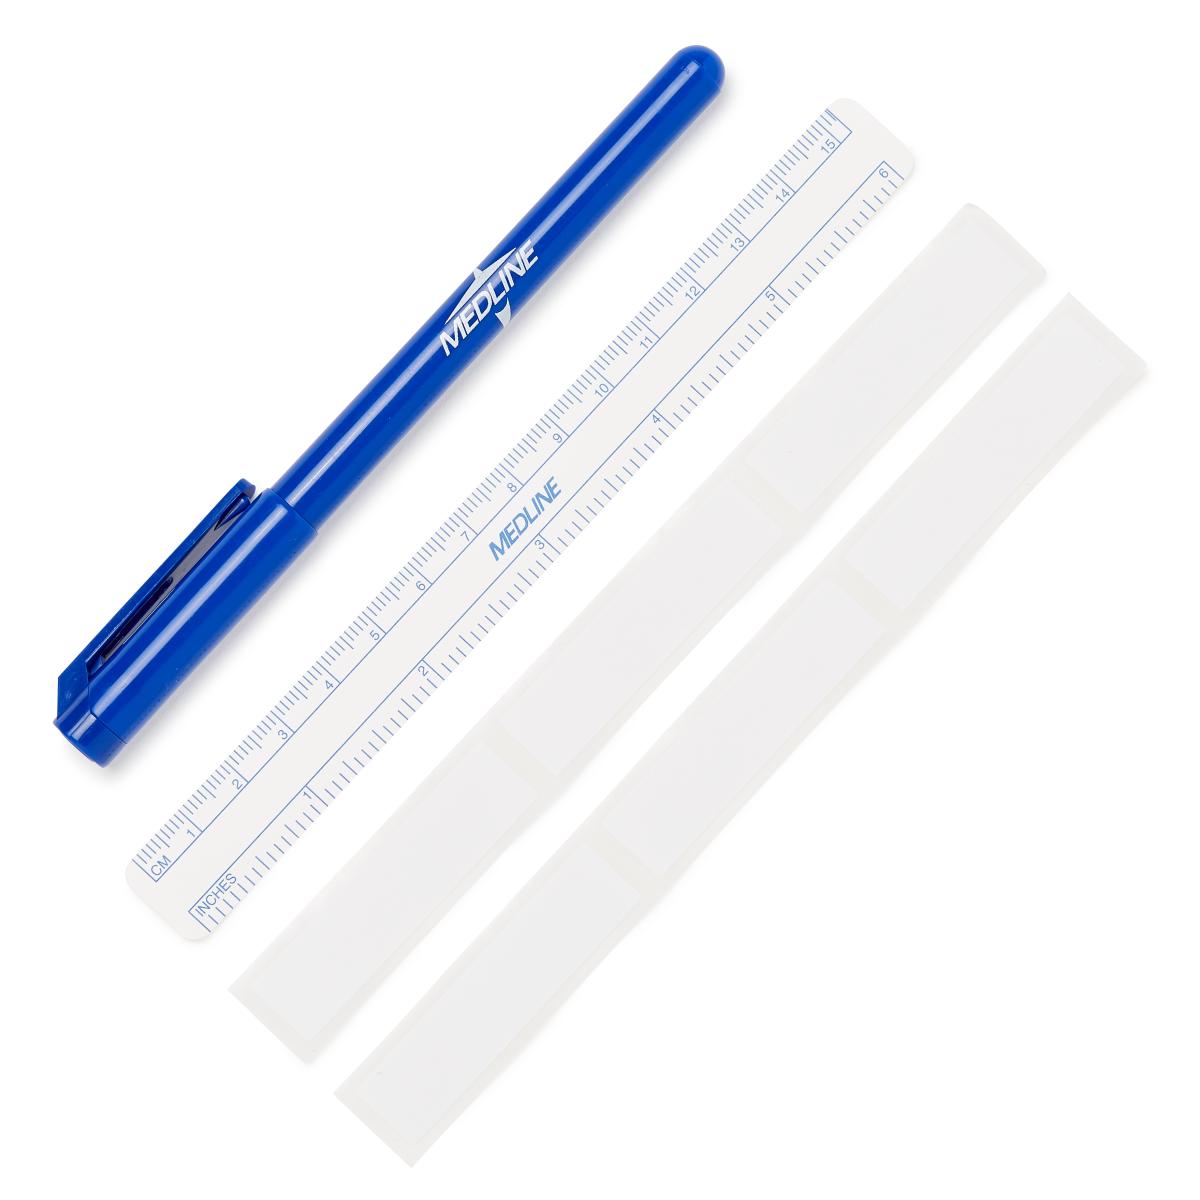 professional surgical skin marker pen medical